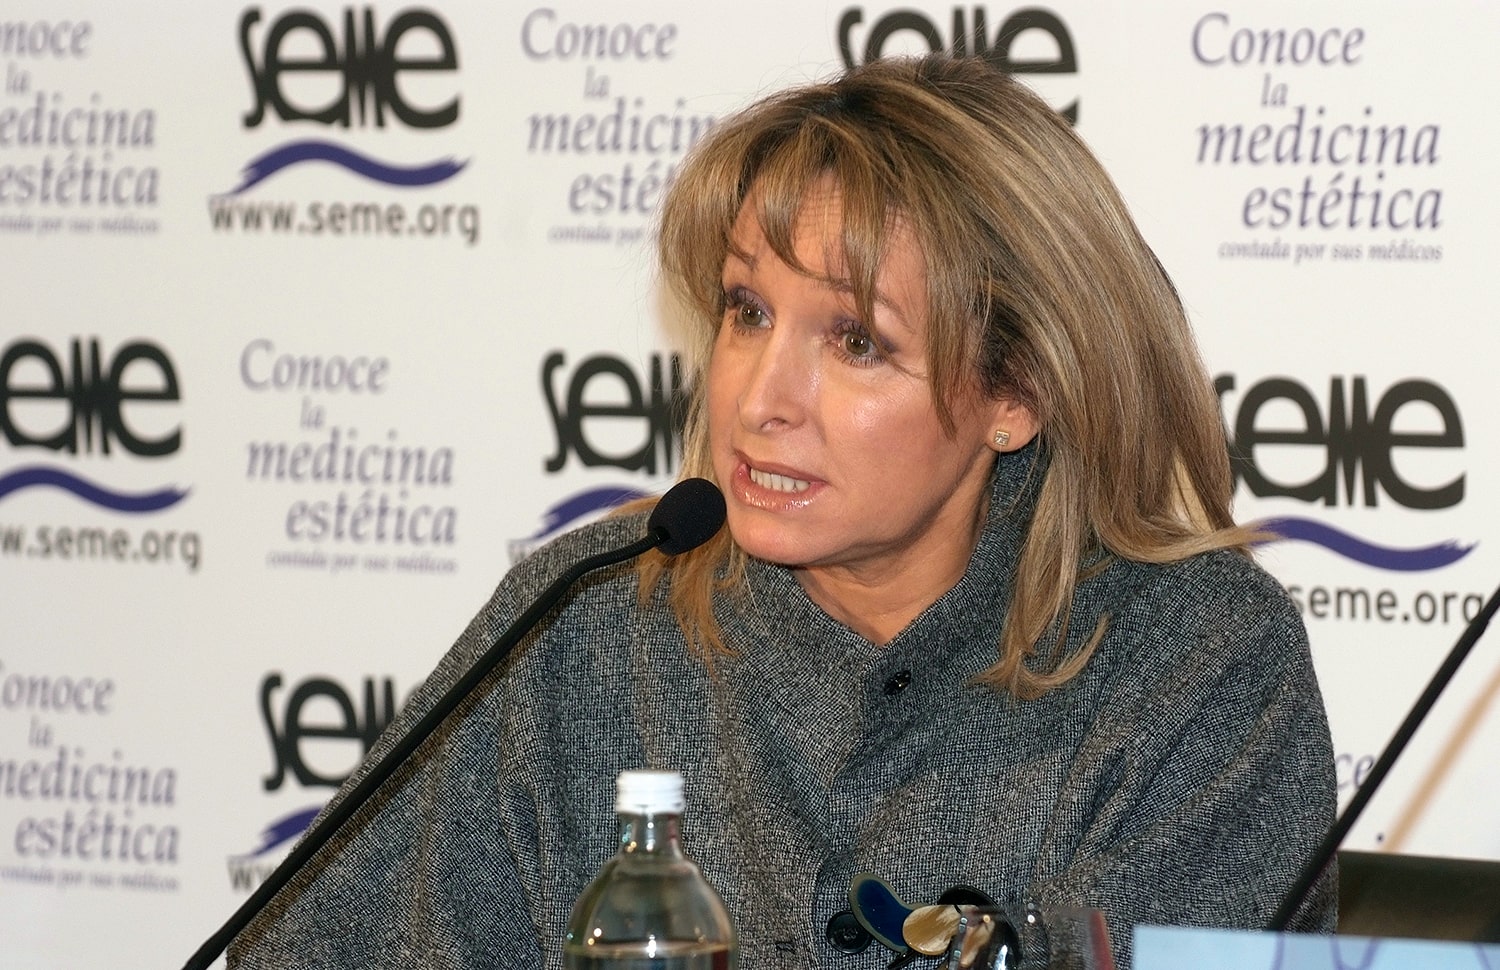 La doctora Concha Obregón es coordinadora del libro de la SEME